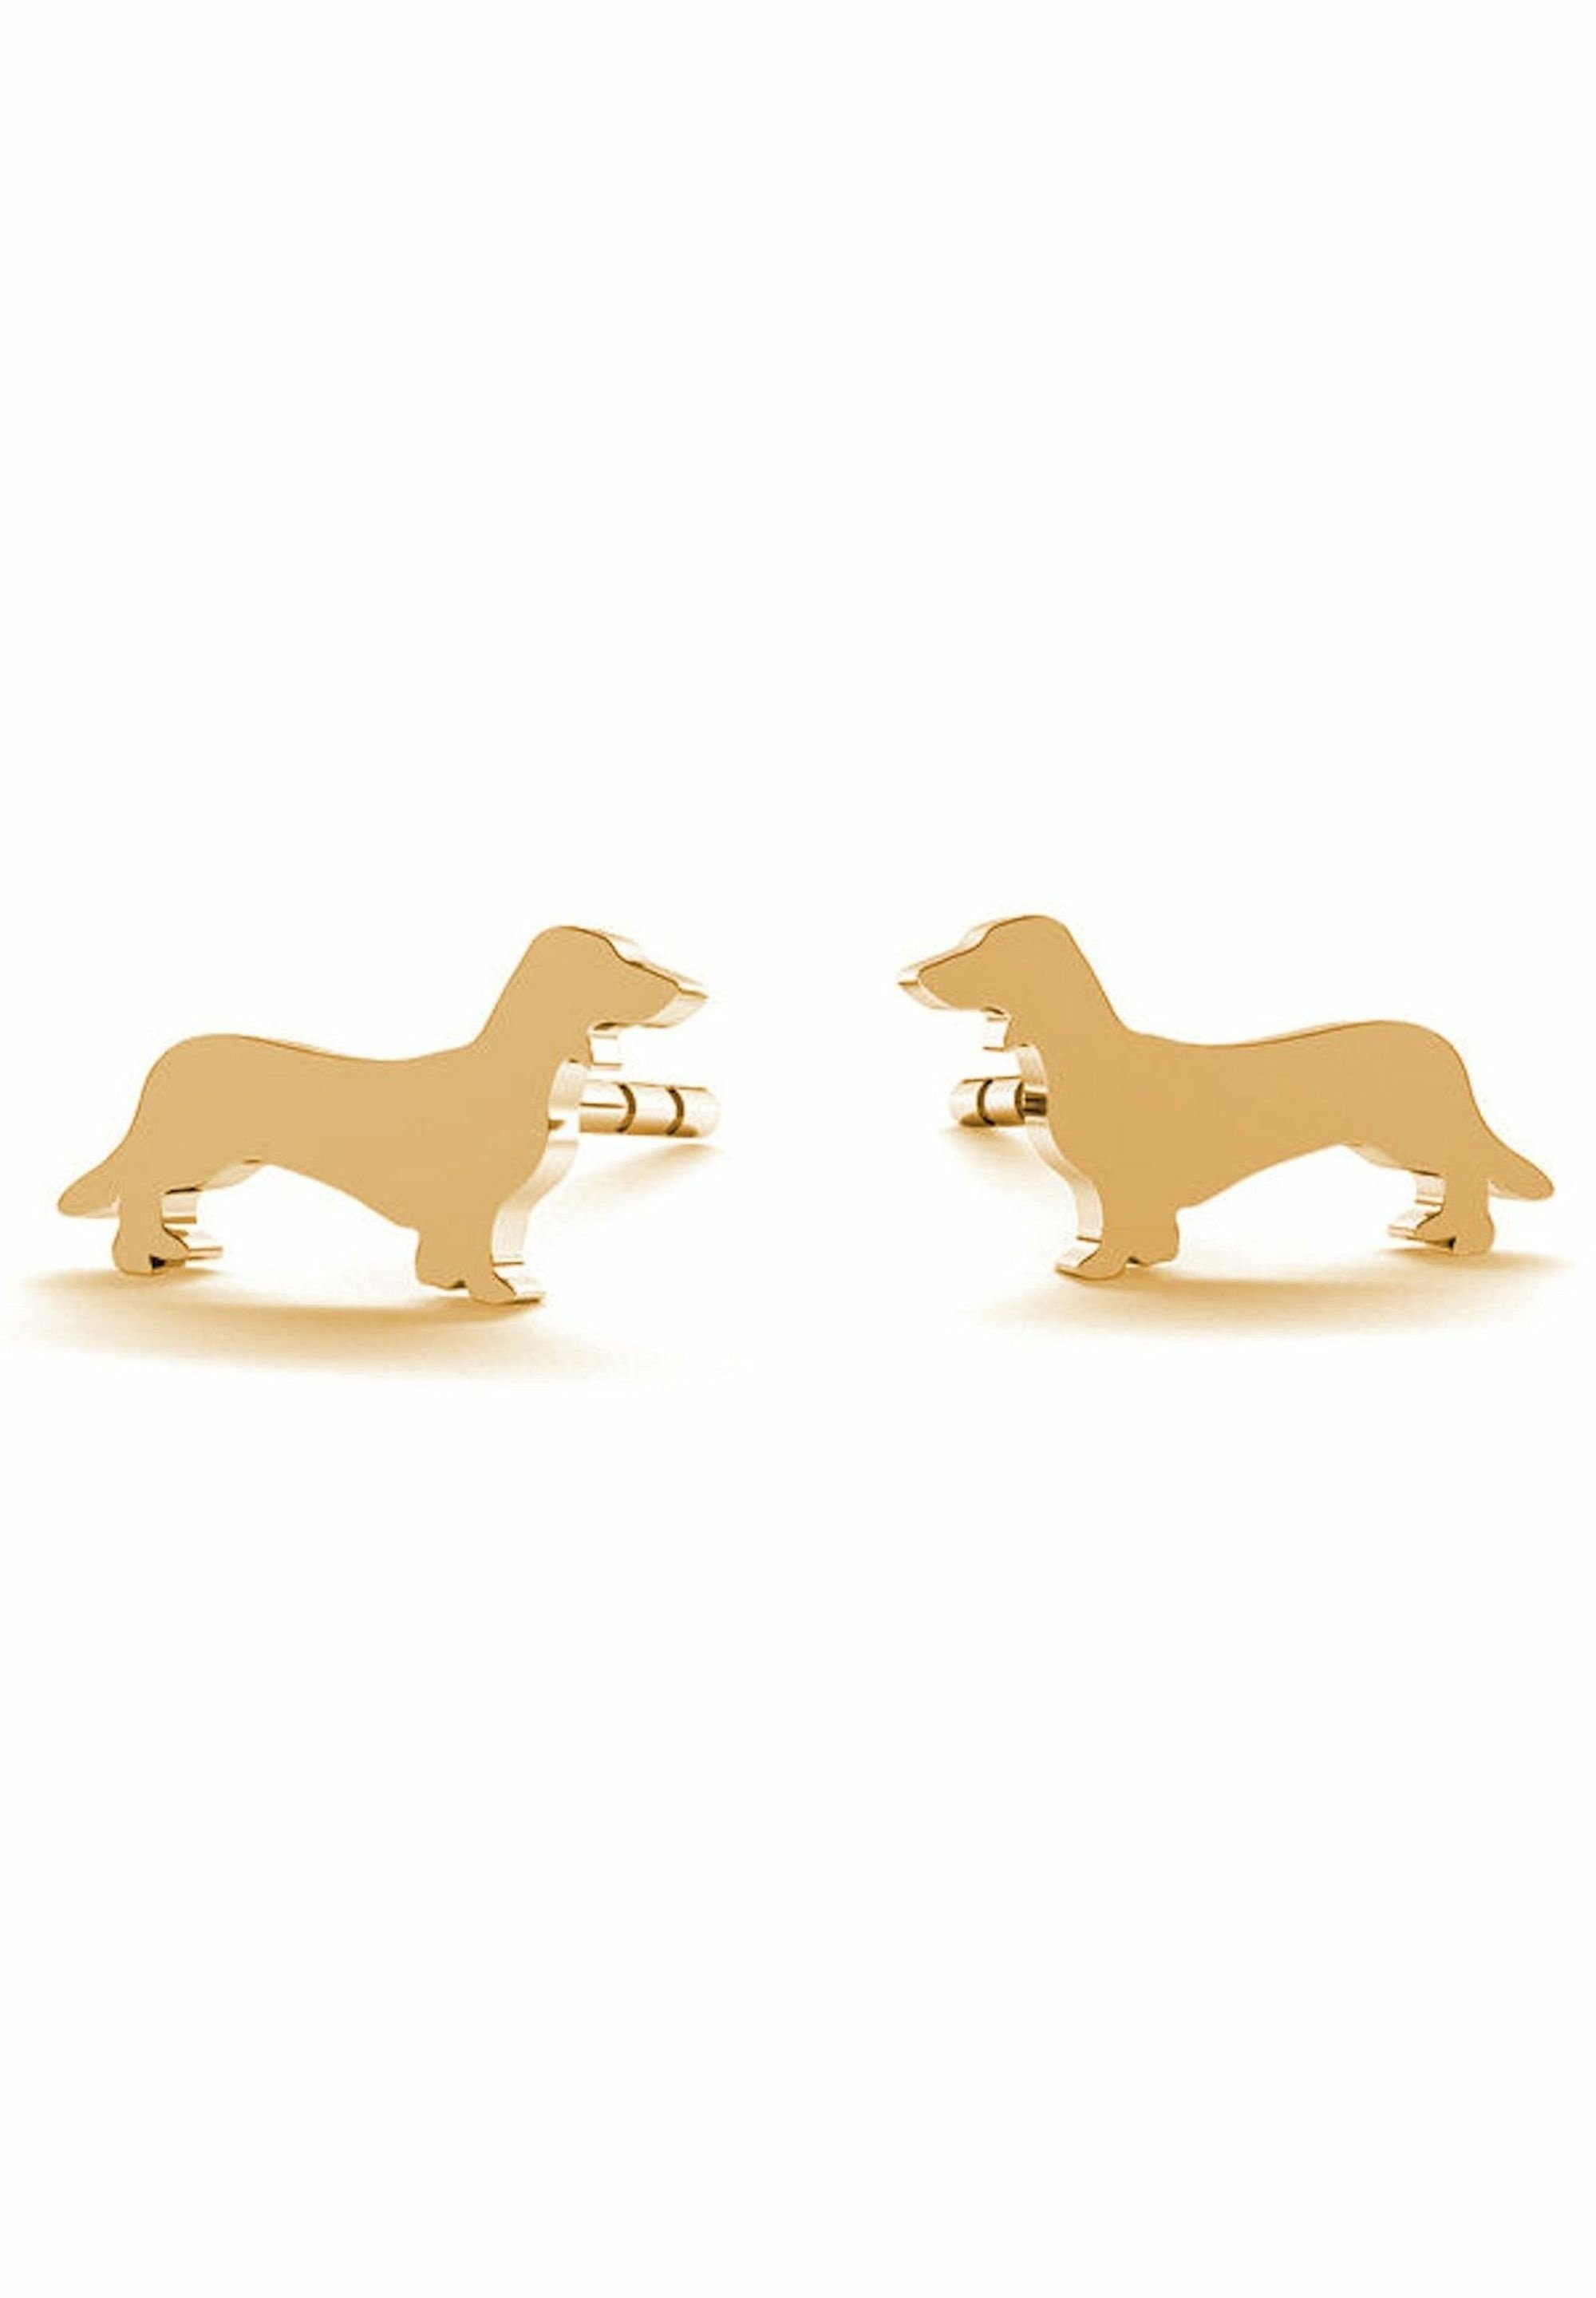 Paar Hund, Ohrhänger Haustier DACHSHUND, coloured gold Gemshine DACKEL